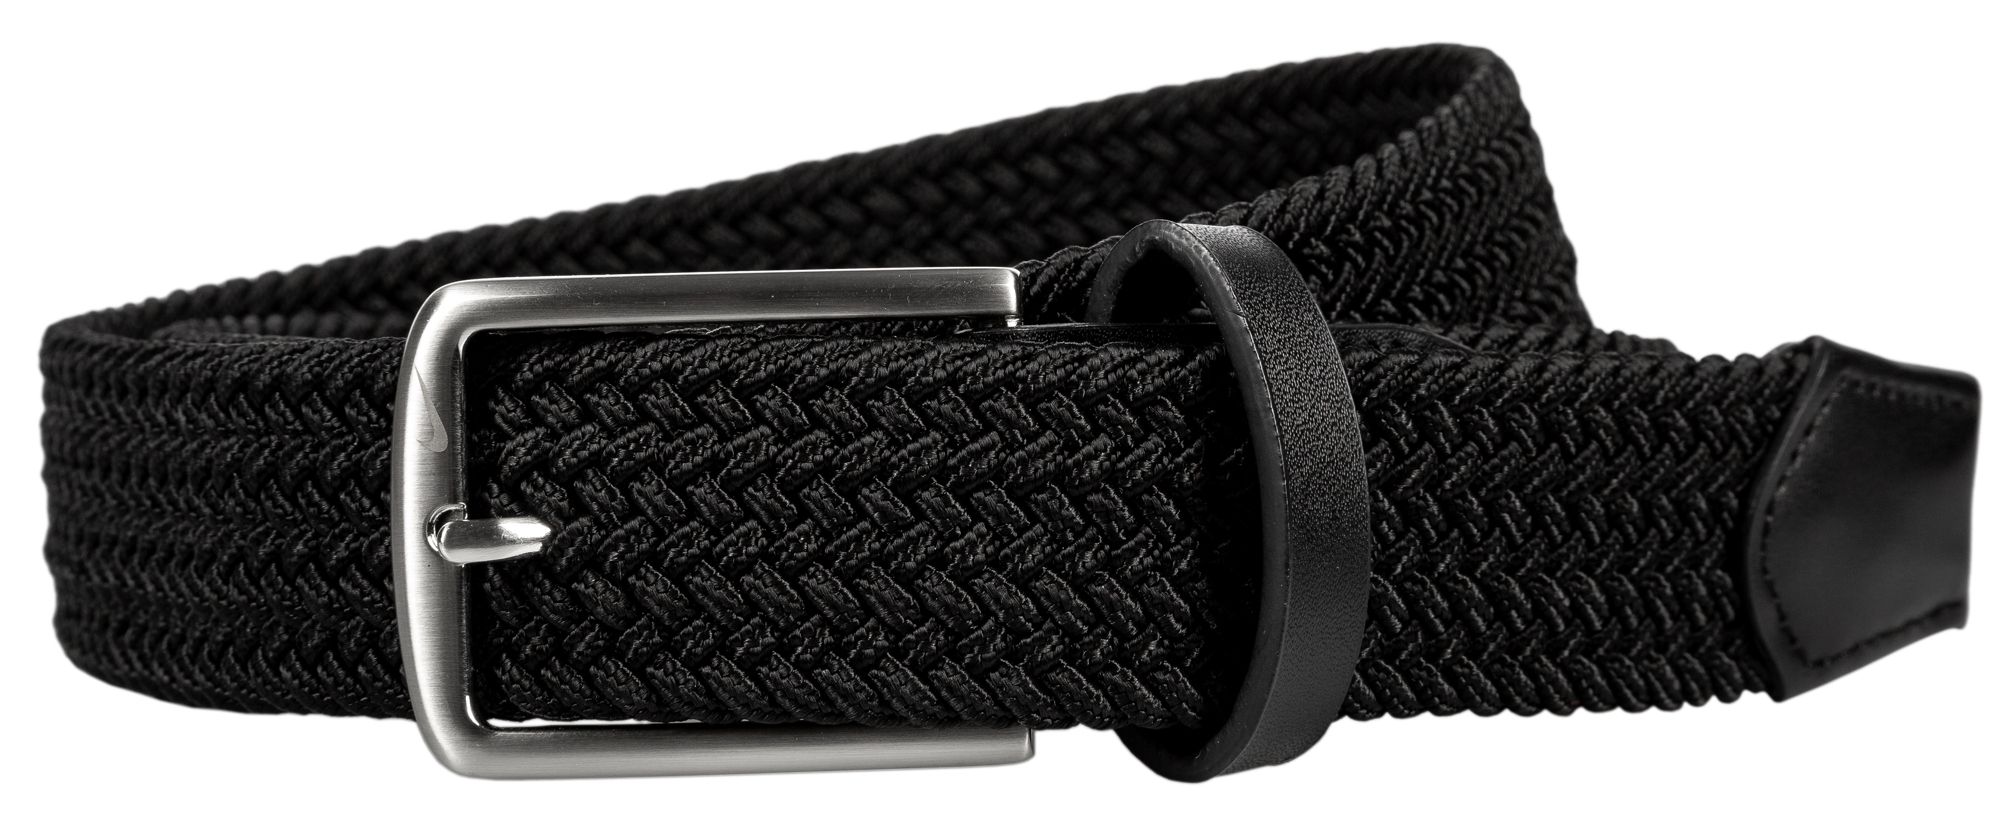 Nike / Men's Stretch Woven II Golf Belt